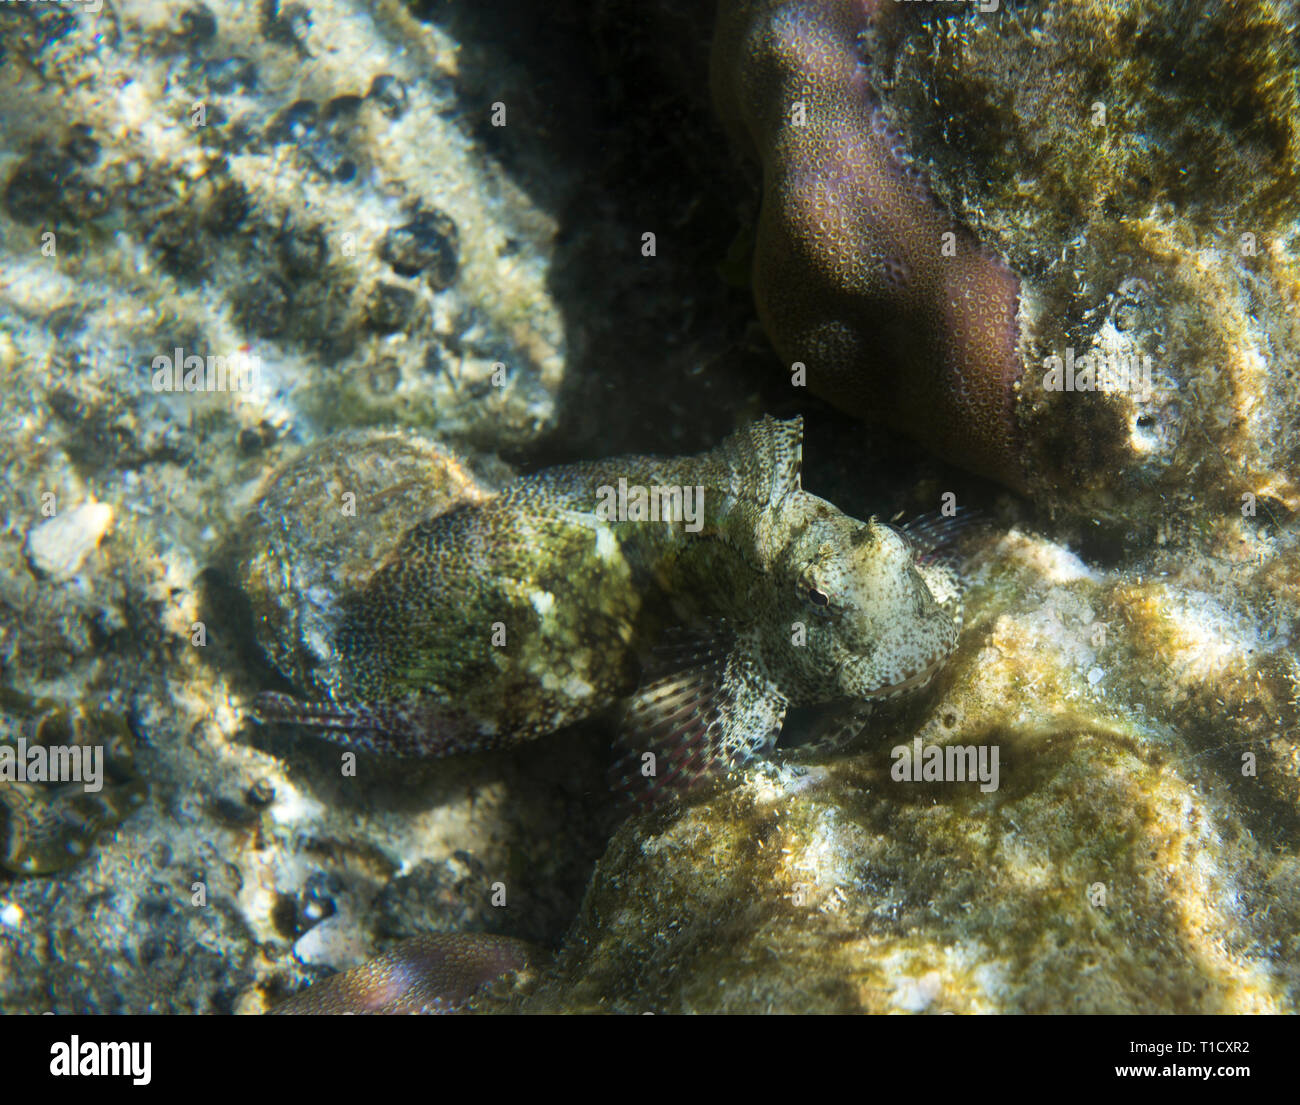 A salarias fasciatus fish close up in Indonesia Stock Photo